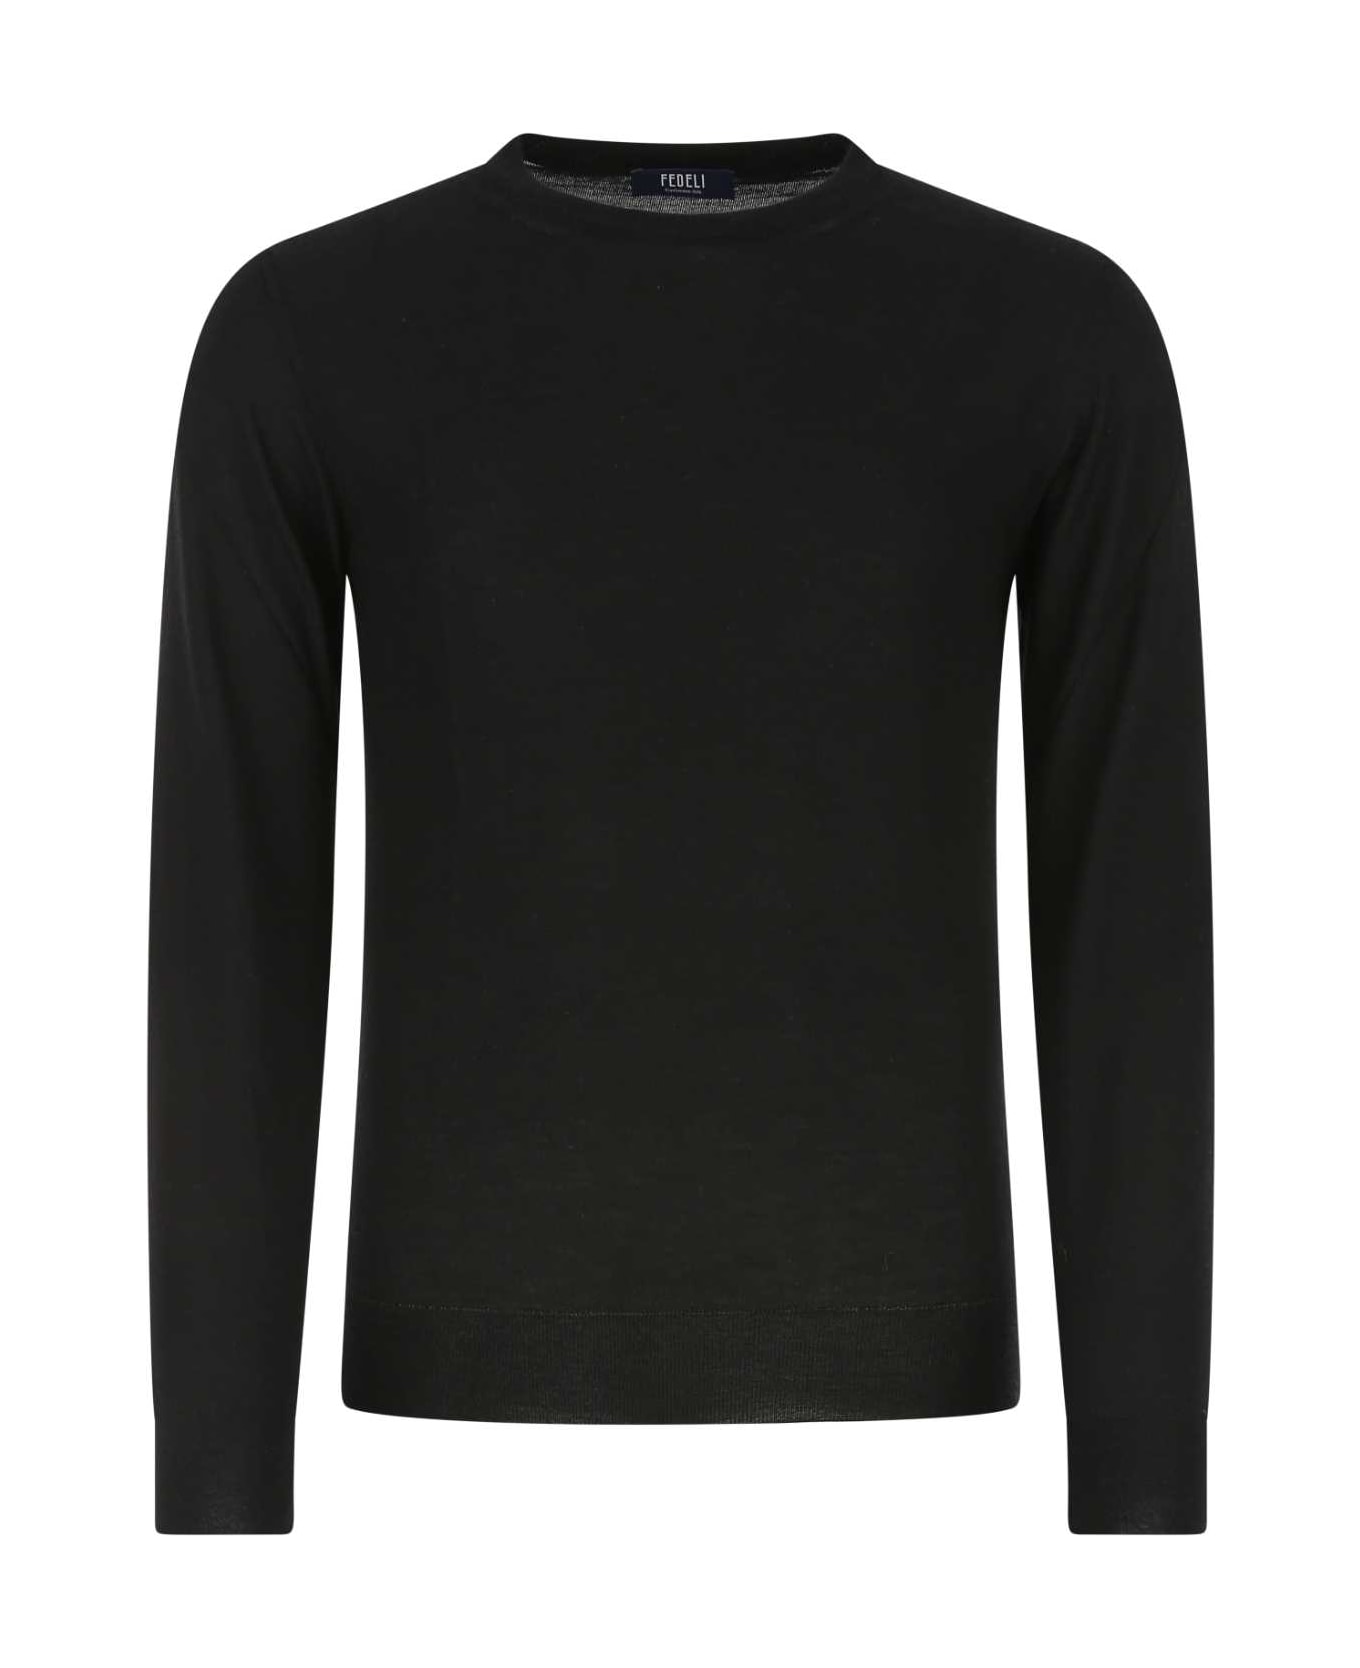 Fedeli Black Cashmere Blend Sweater - 9 ニットウェア